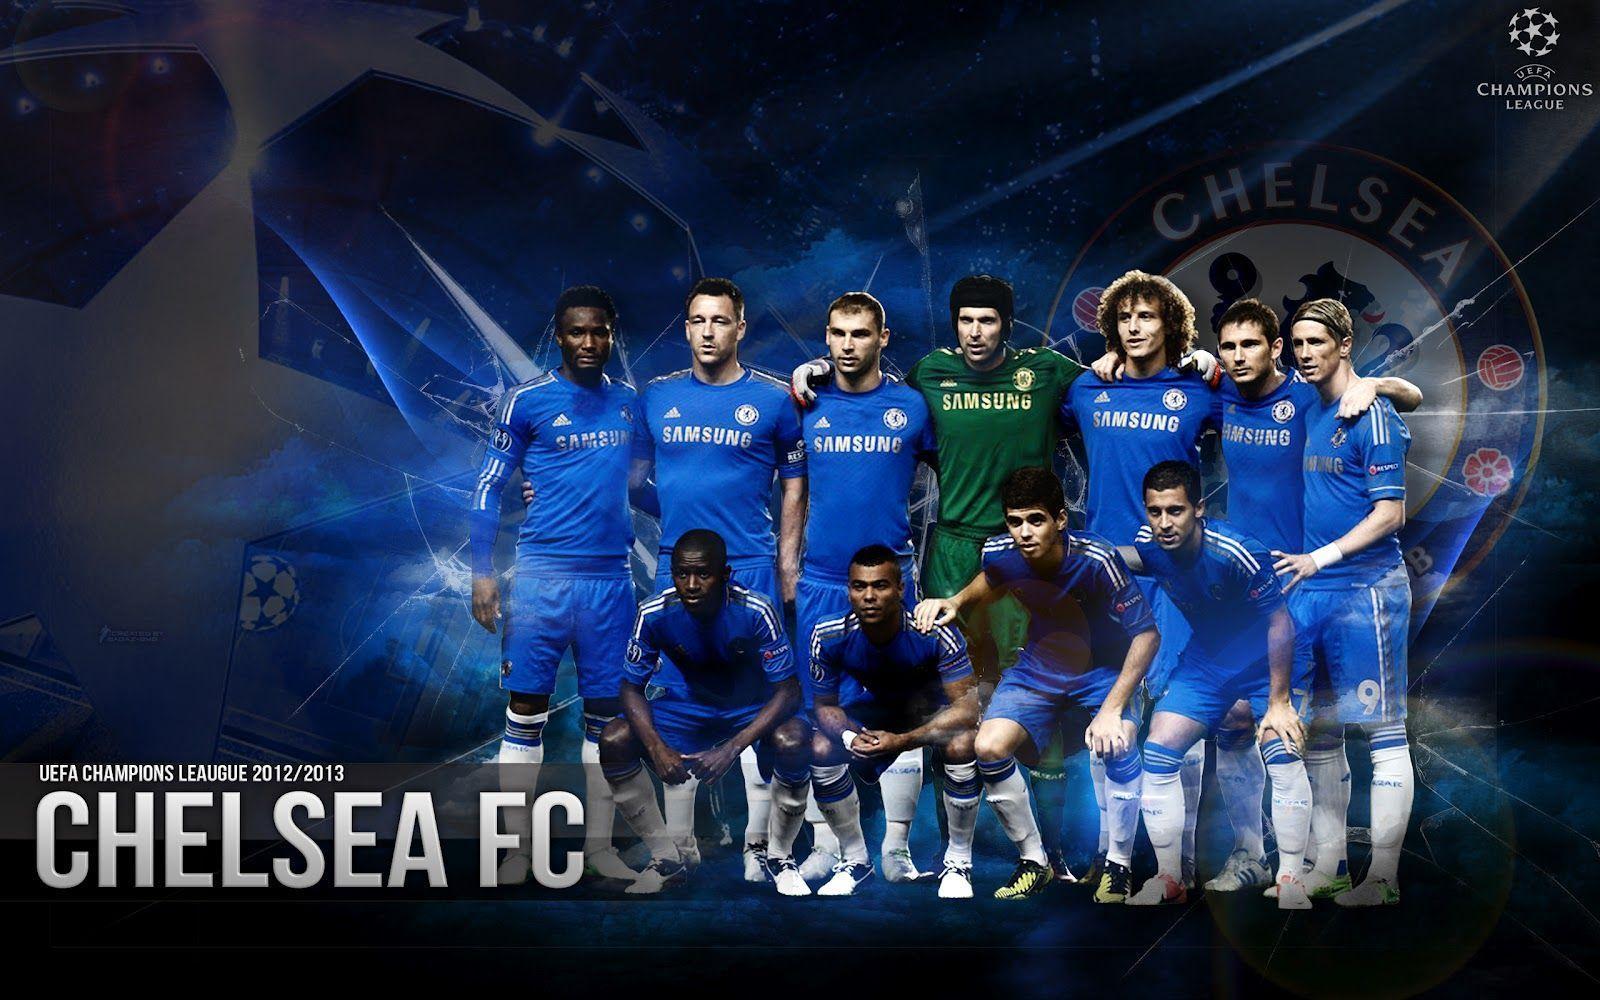 Wallpaper Chelsea FC 2014 Sporteology